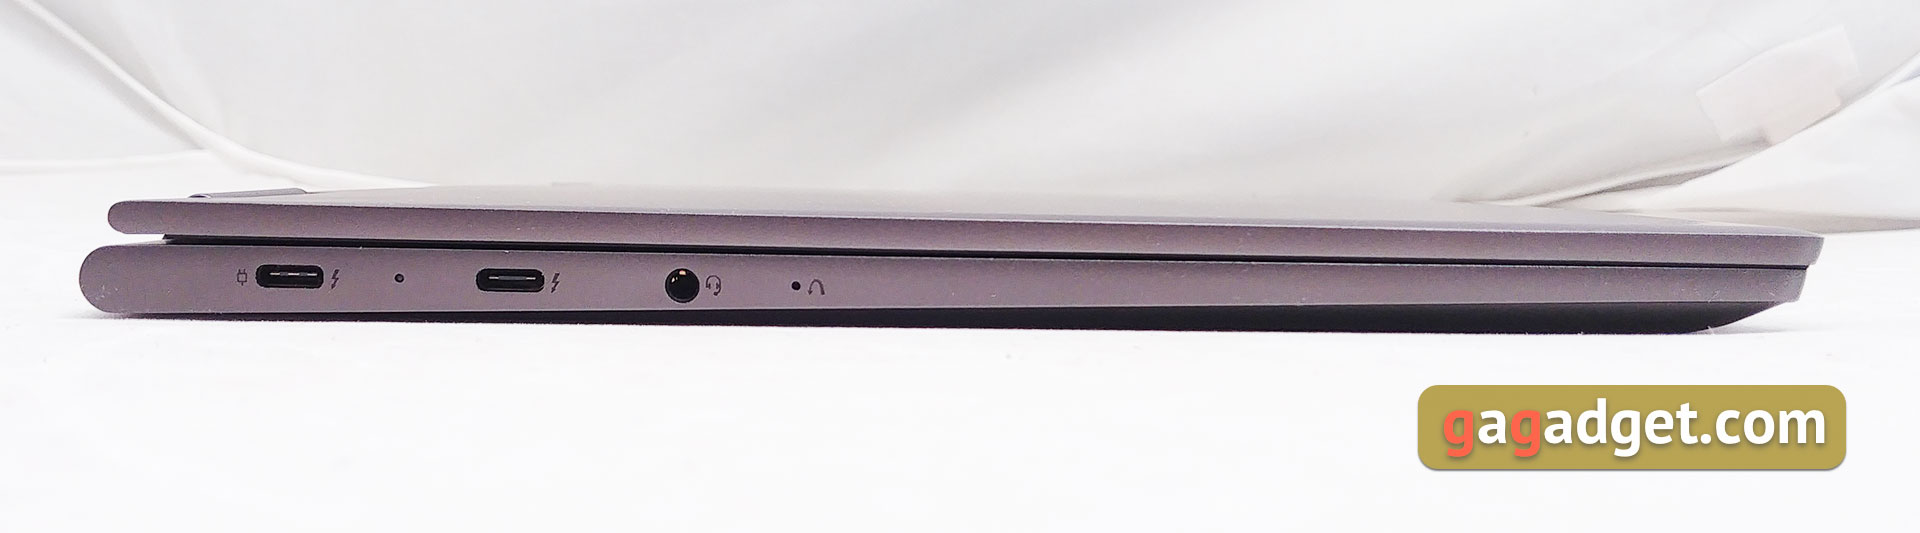 Обзор Lenovo YOGA 730-13: универсальный ультрапортативный ноутбук-трансформер-9